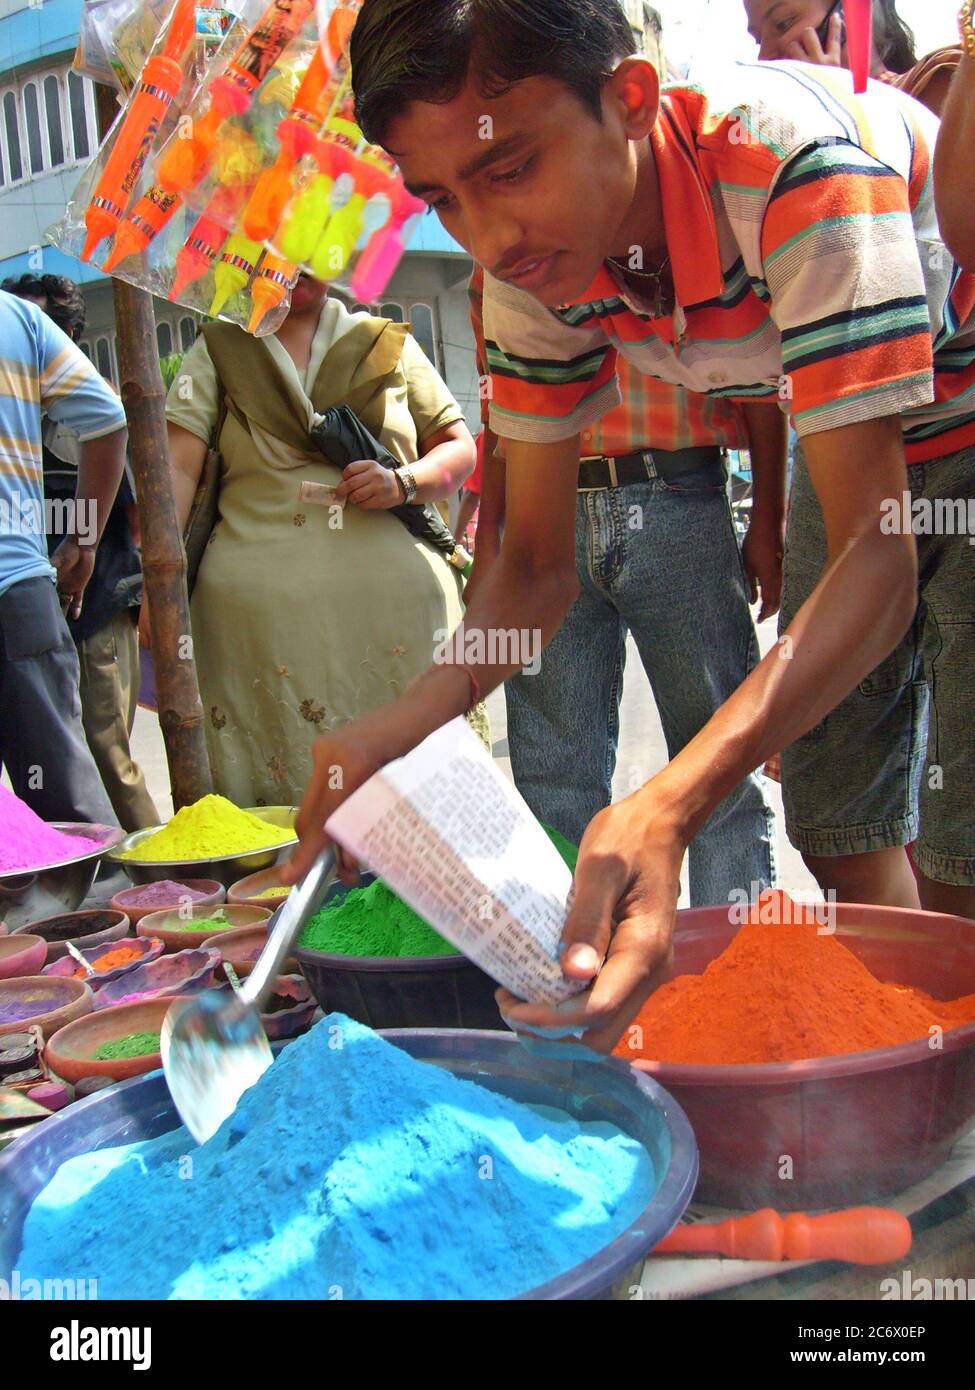 Un jeune garçon vend de la poudre de couleur dans la rue, lors du populaire festival hindou Holi, ou du festival de couleur, à Kolkata, en Inde. 20 mars 2008. Holi a lieu sur deux jours dans la fin de février ou au début de mars, chaque année. Le festival comble le fossé social et renouvelle les relations. Banque D'Images